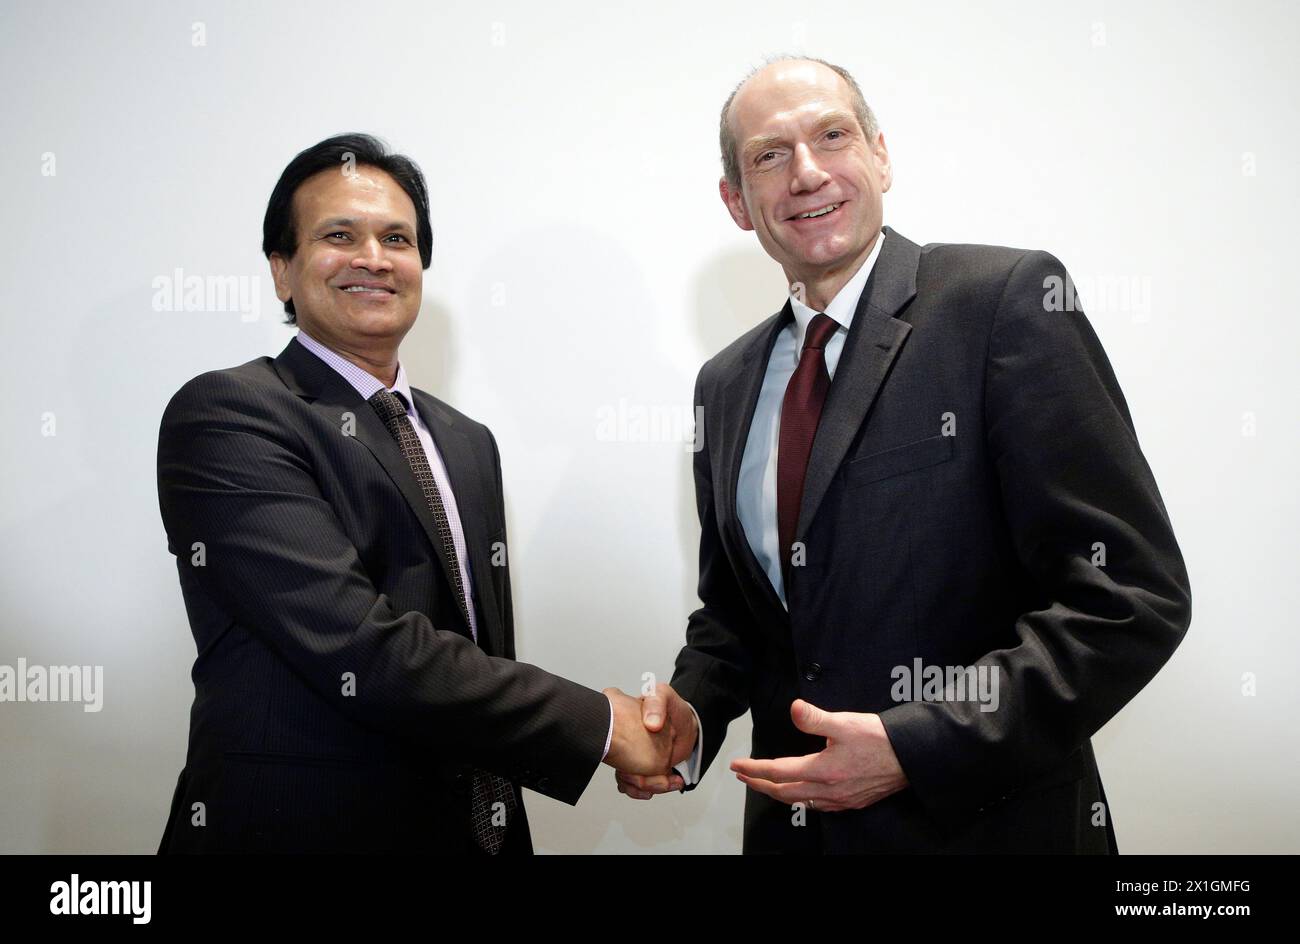 Le nouveau propriétaire de la Hypo Alpe Adria Bank Sanjeev Kanoria et le président désigné Martin Czurda lors d'une conférence de presse à Vienne le 19 décembre 2013. - 20130603 PD9471 - Rechteinfo : droits gérés (RM) Banque D'Images